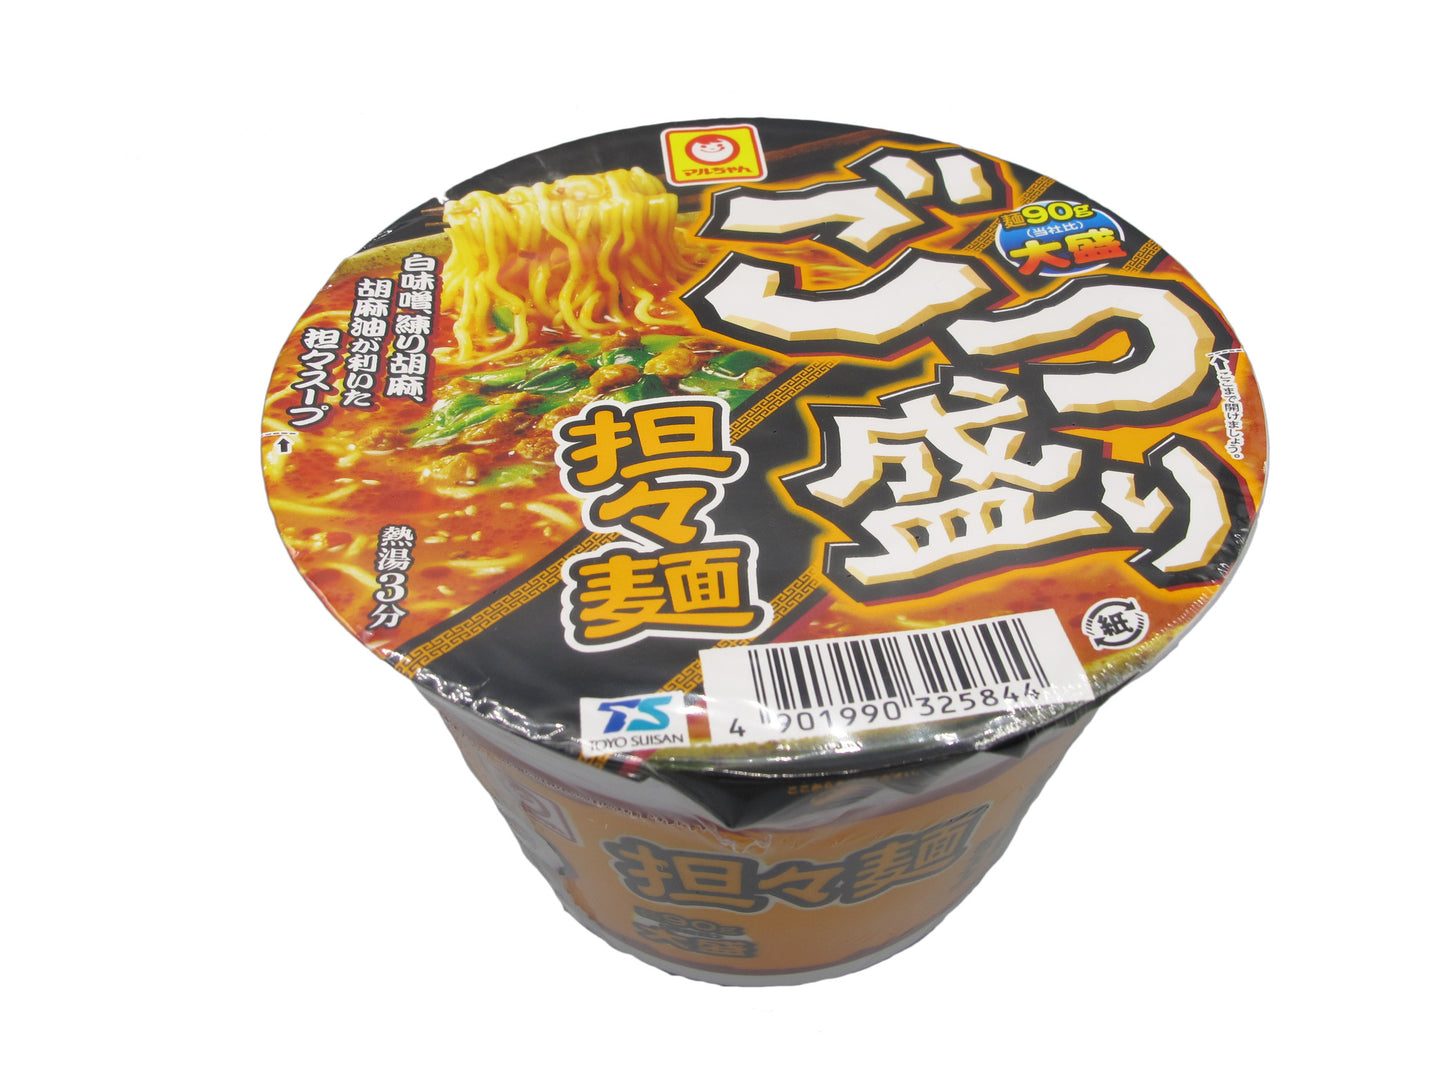 Big Bowl of Dandan Noodles